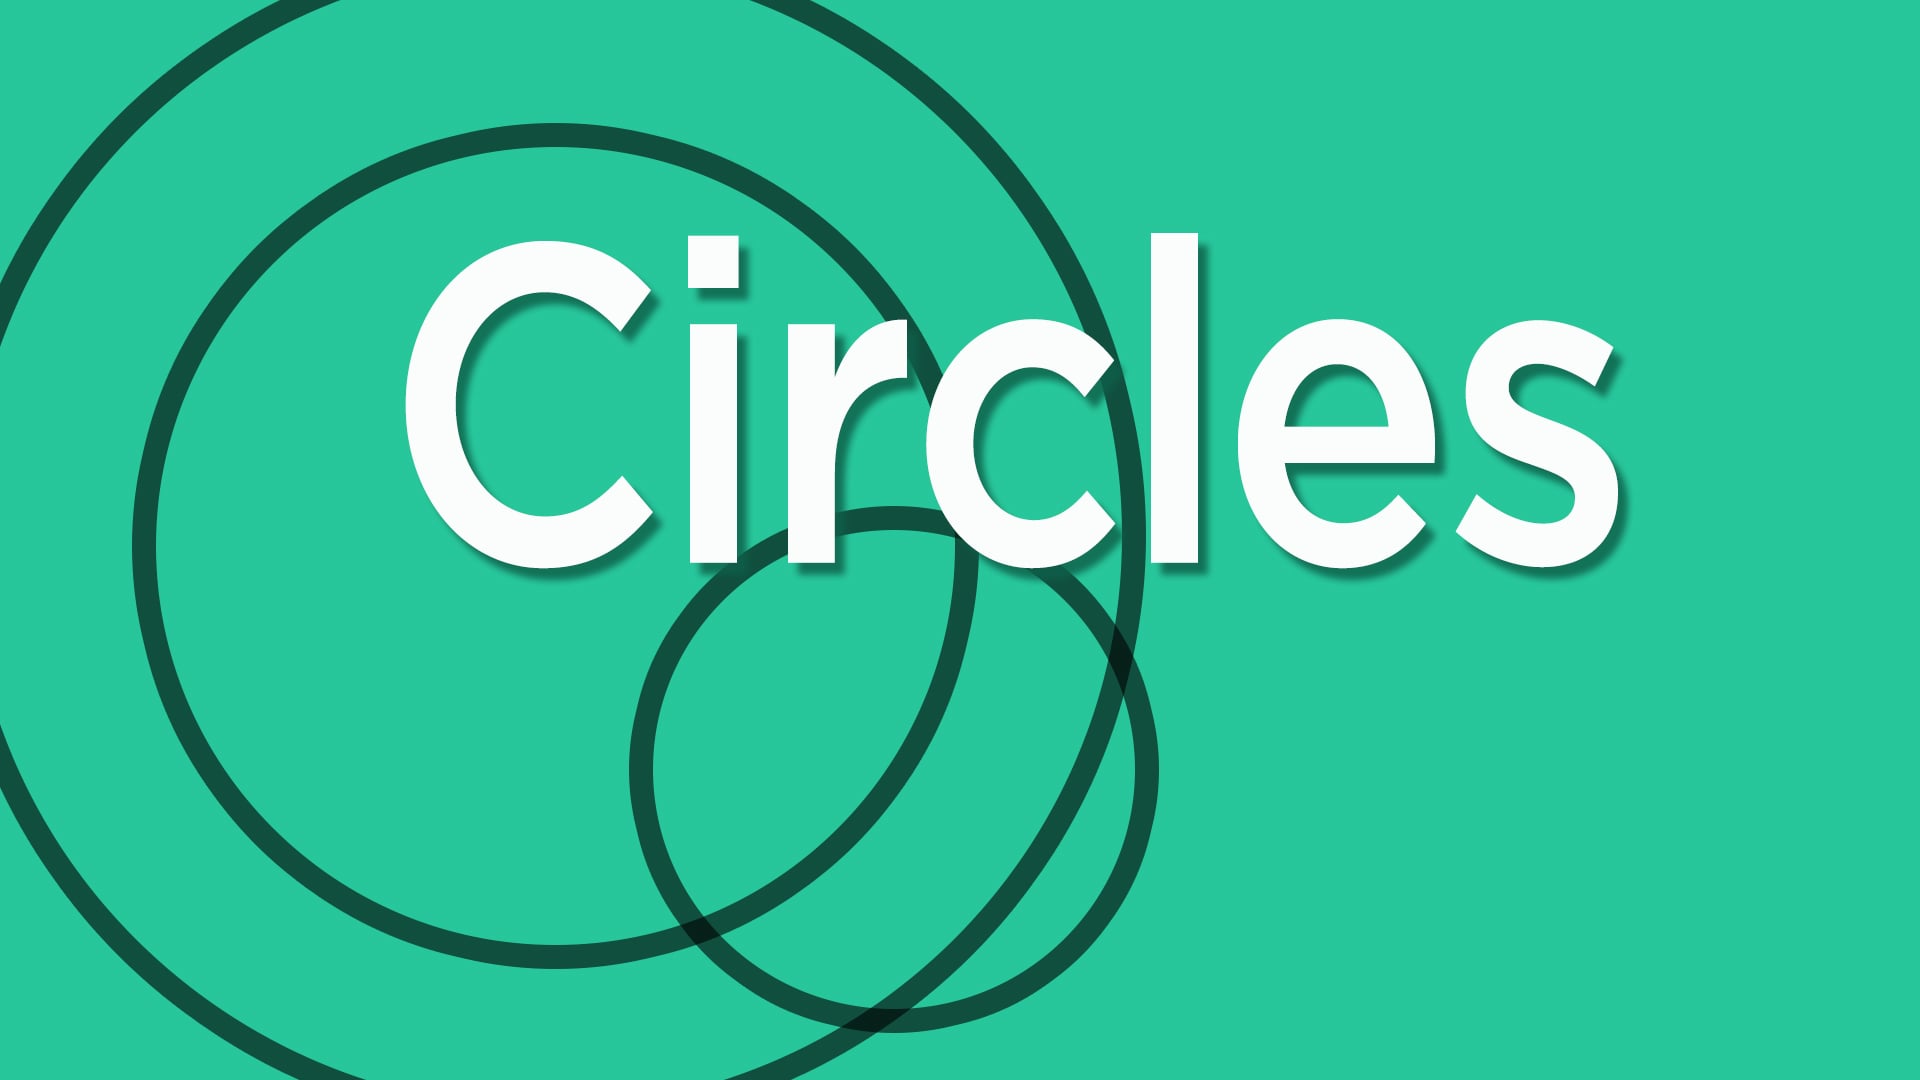 Intersecting Circles